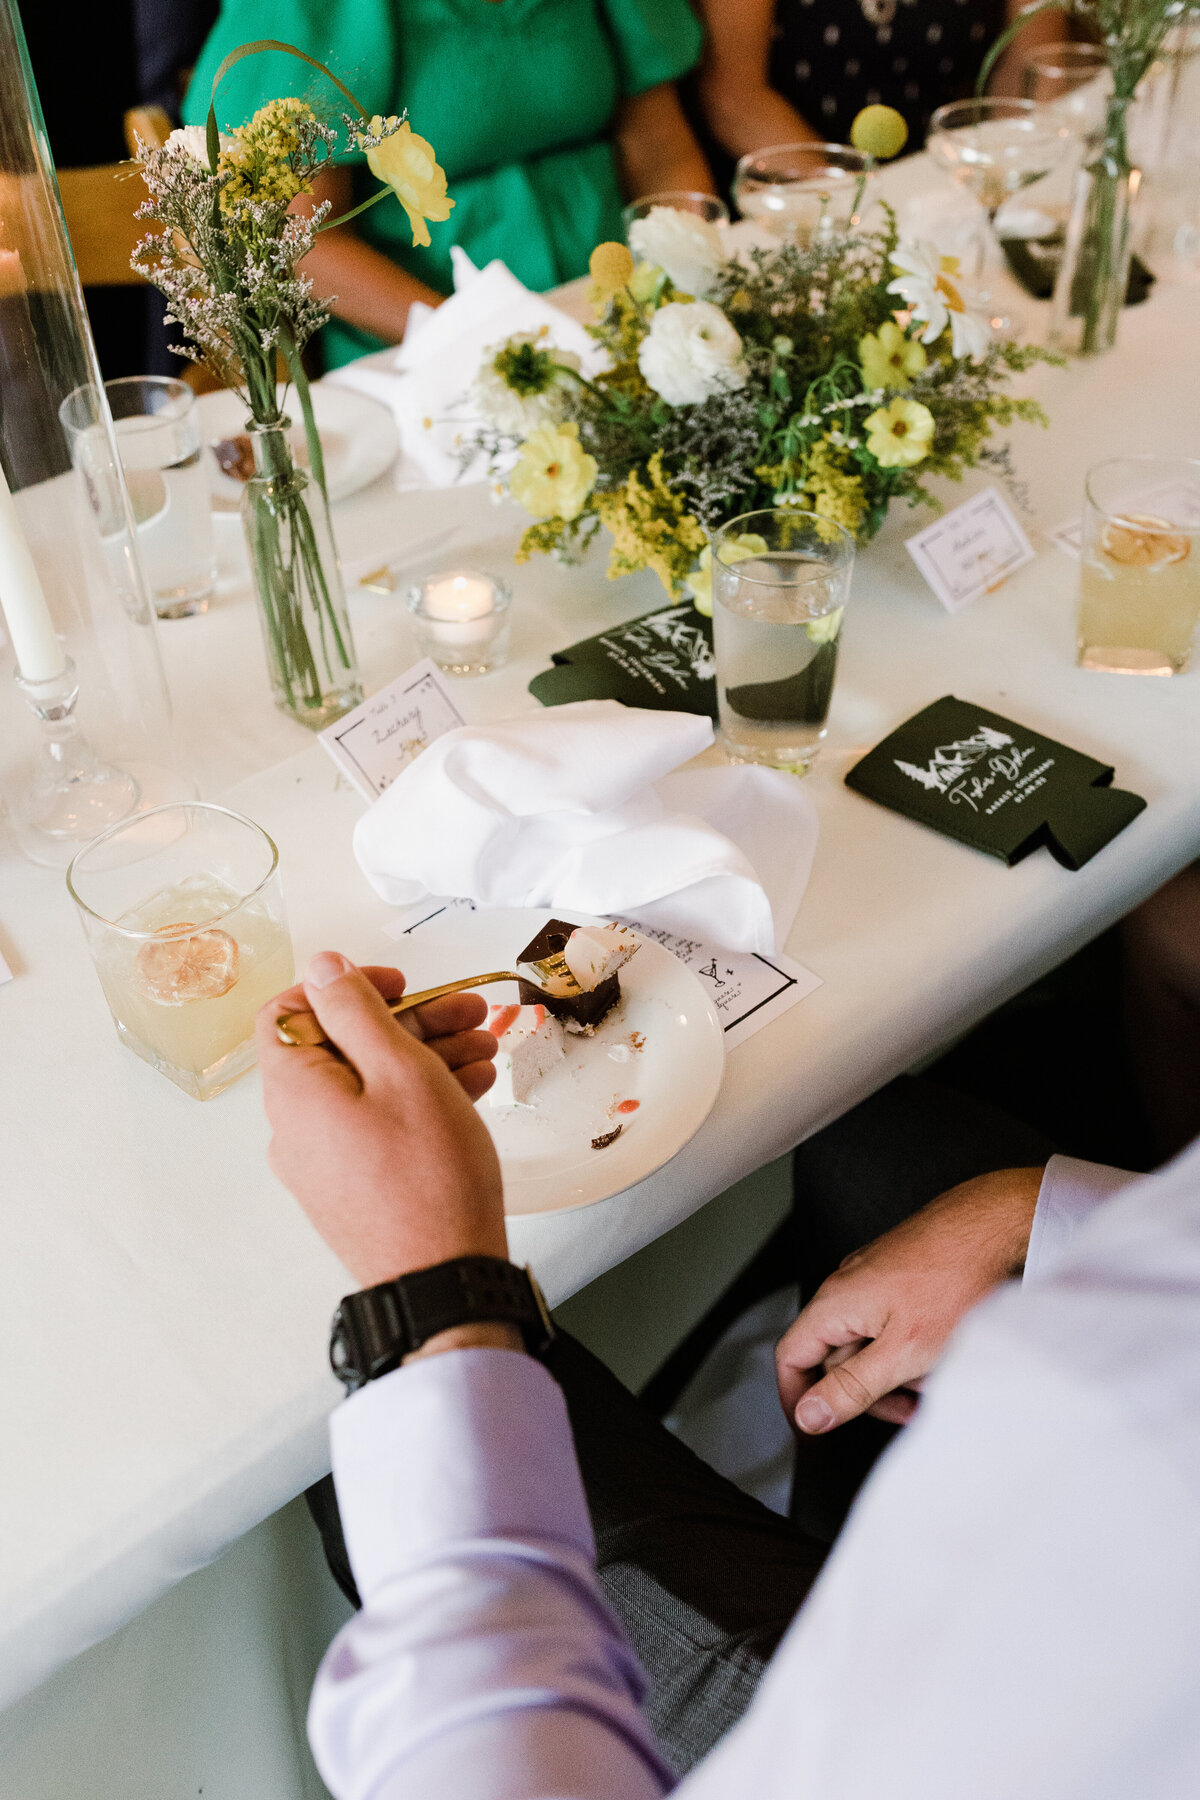 Man sitting at table eating wedding cake